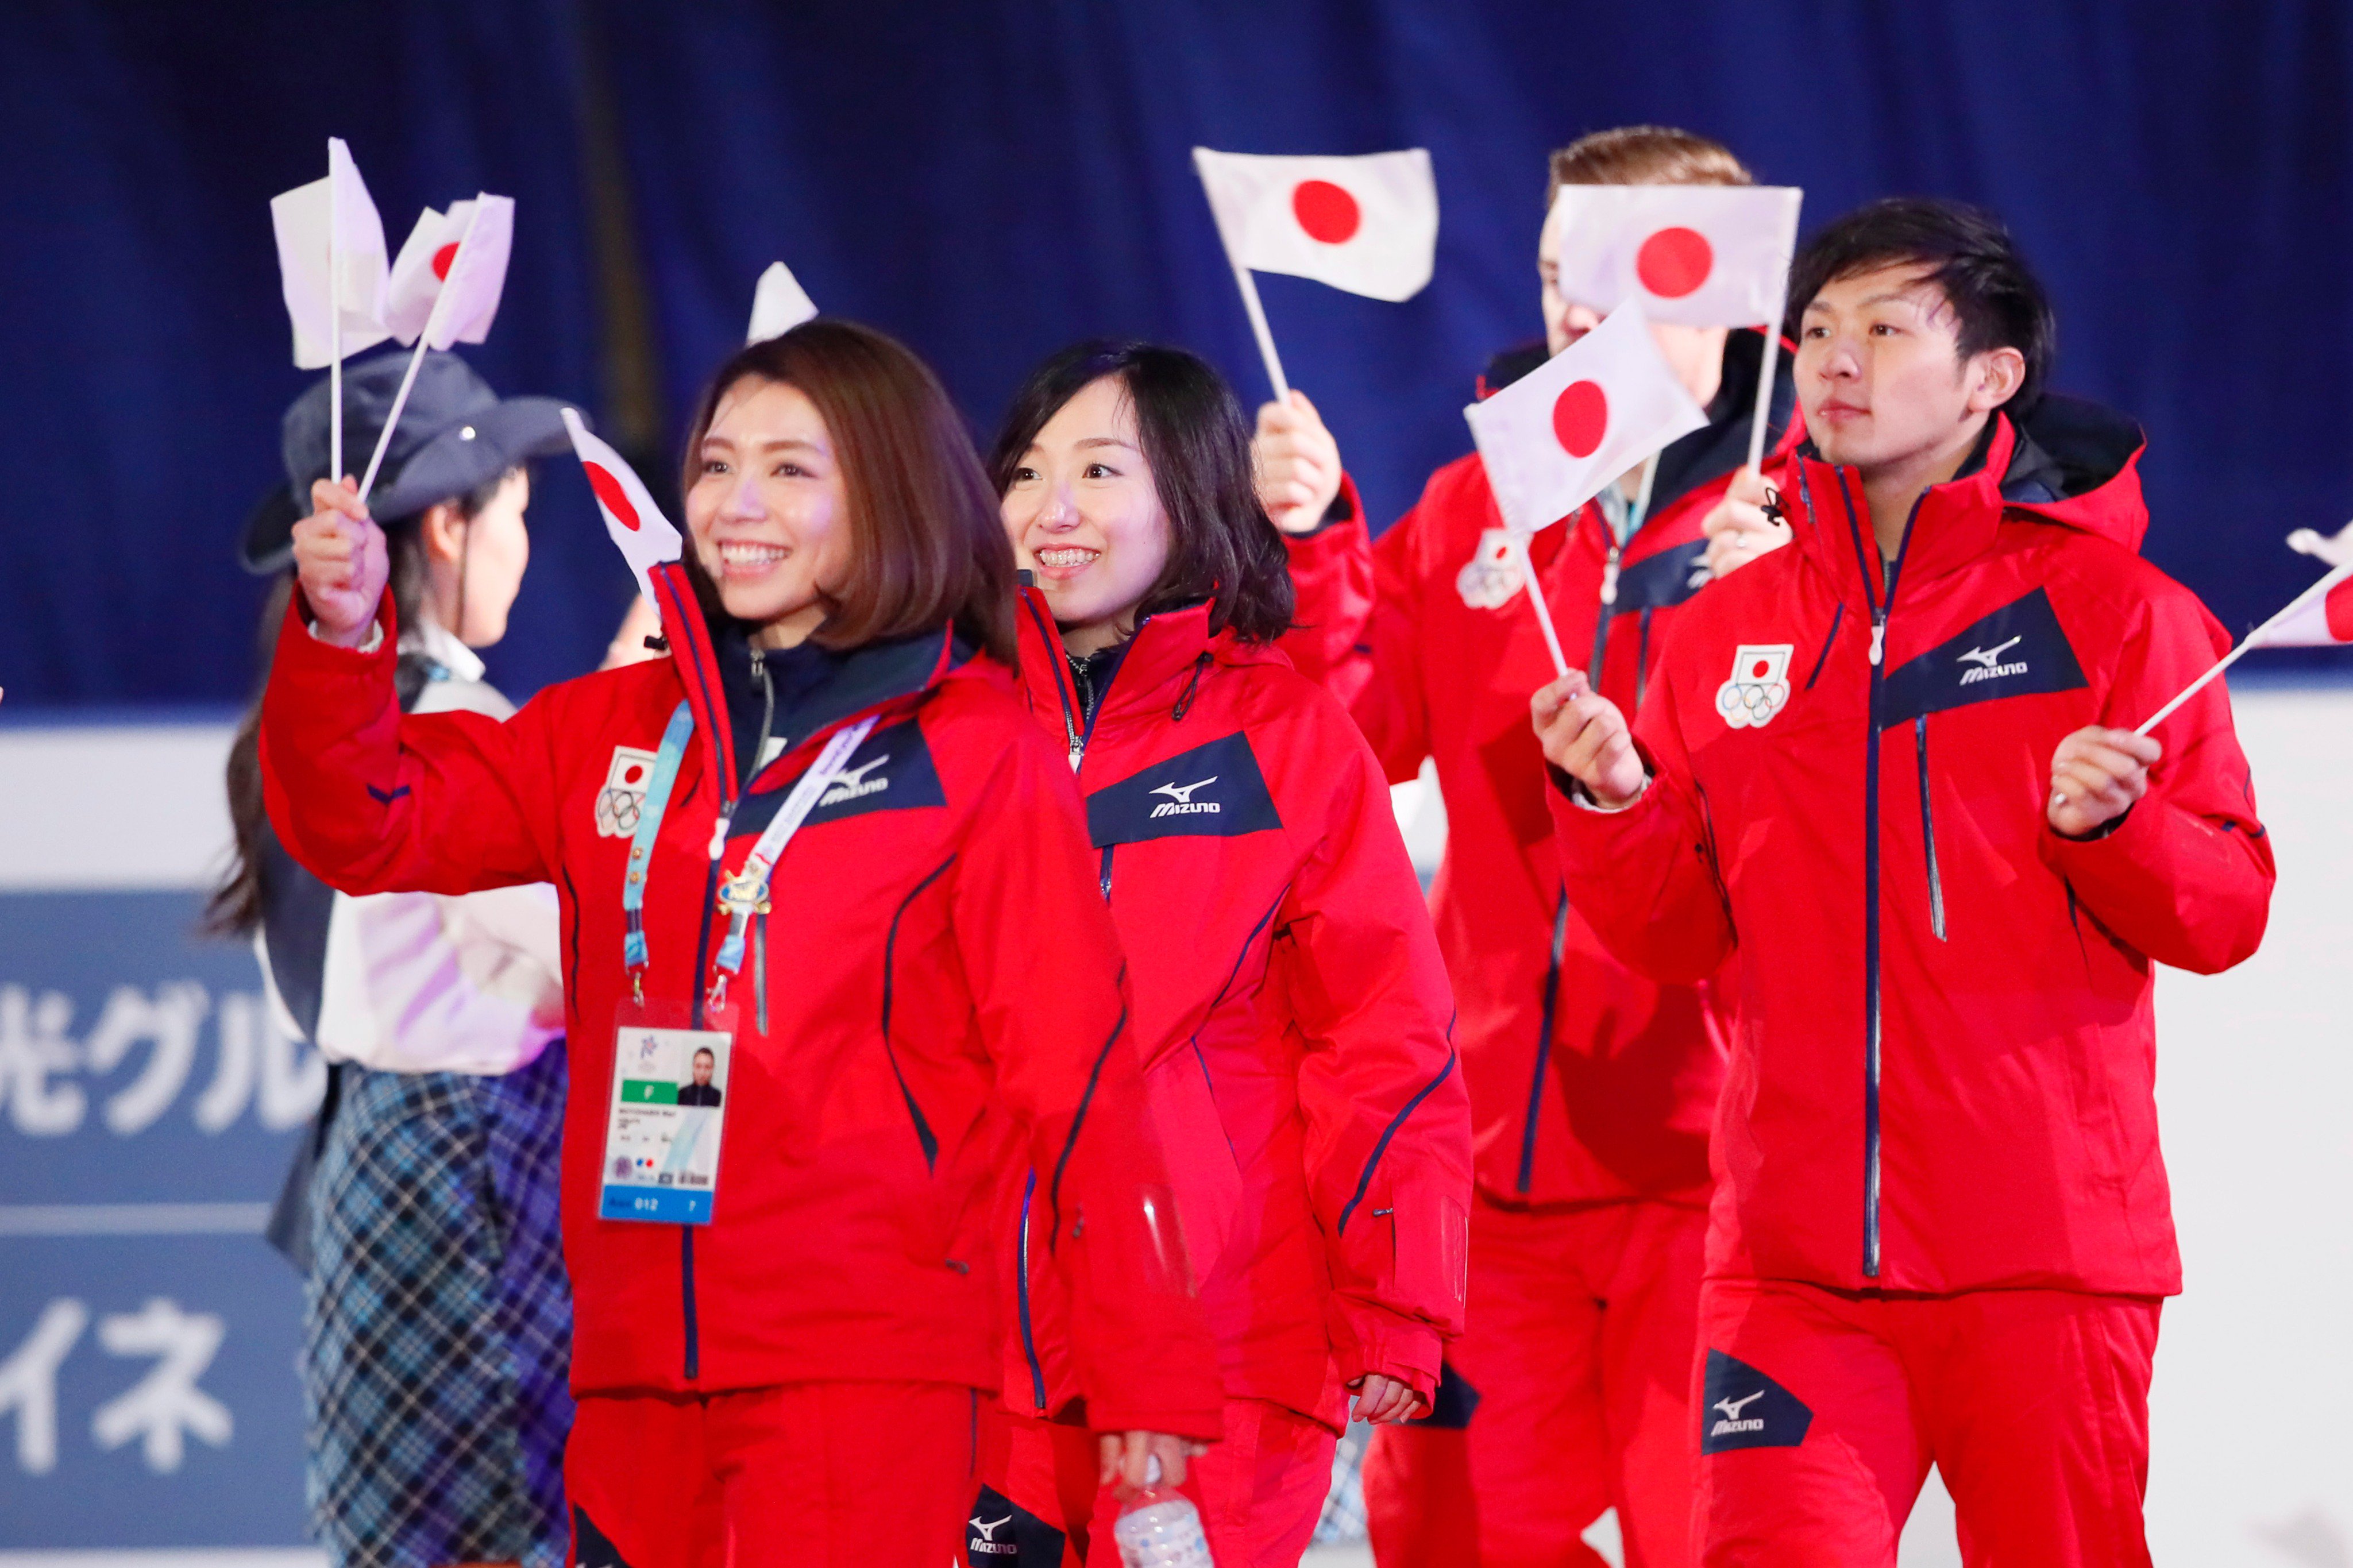 日本オリンピック委員会 Joc On Twitter 第8回アジア冬季競技大会 2017 札幌 は26日に閉会式が行われ閉幕 03年青森大会以来の自国開催で 日本代表選手団は国 地域別トップの金メダル27個を獲得 メダル総数74個は過去最多となりました Https T Co Fkpbkqbssf